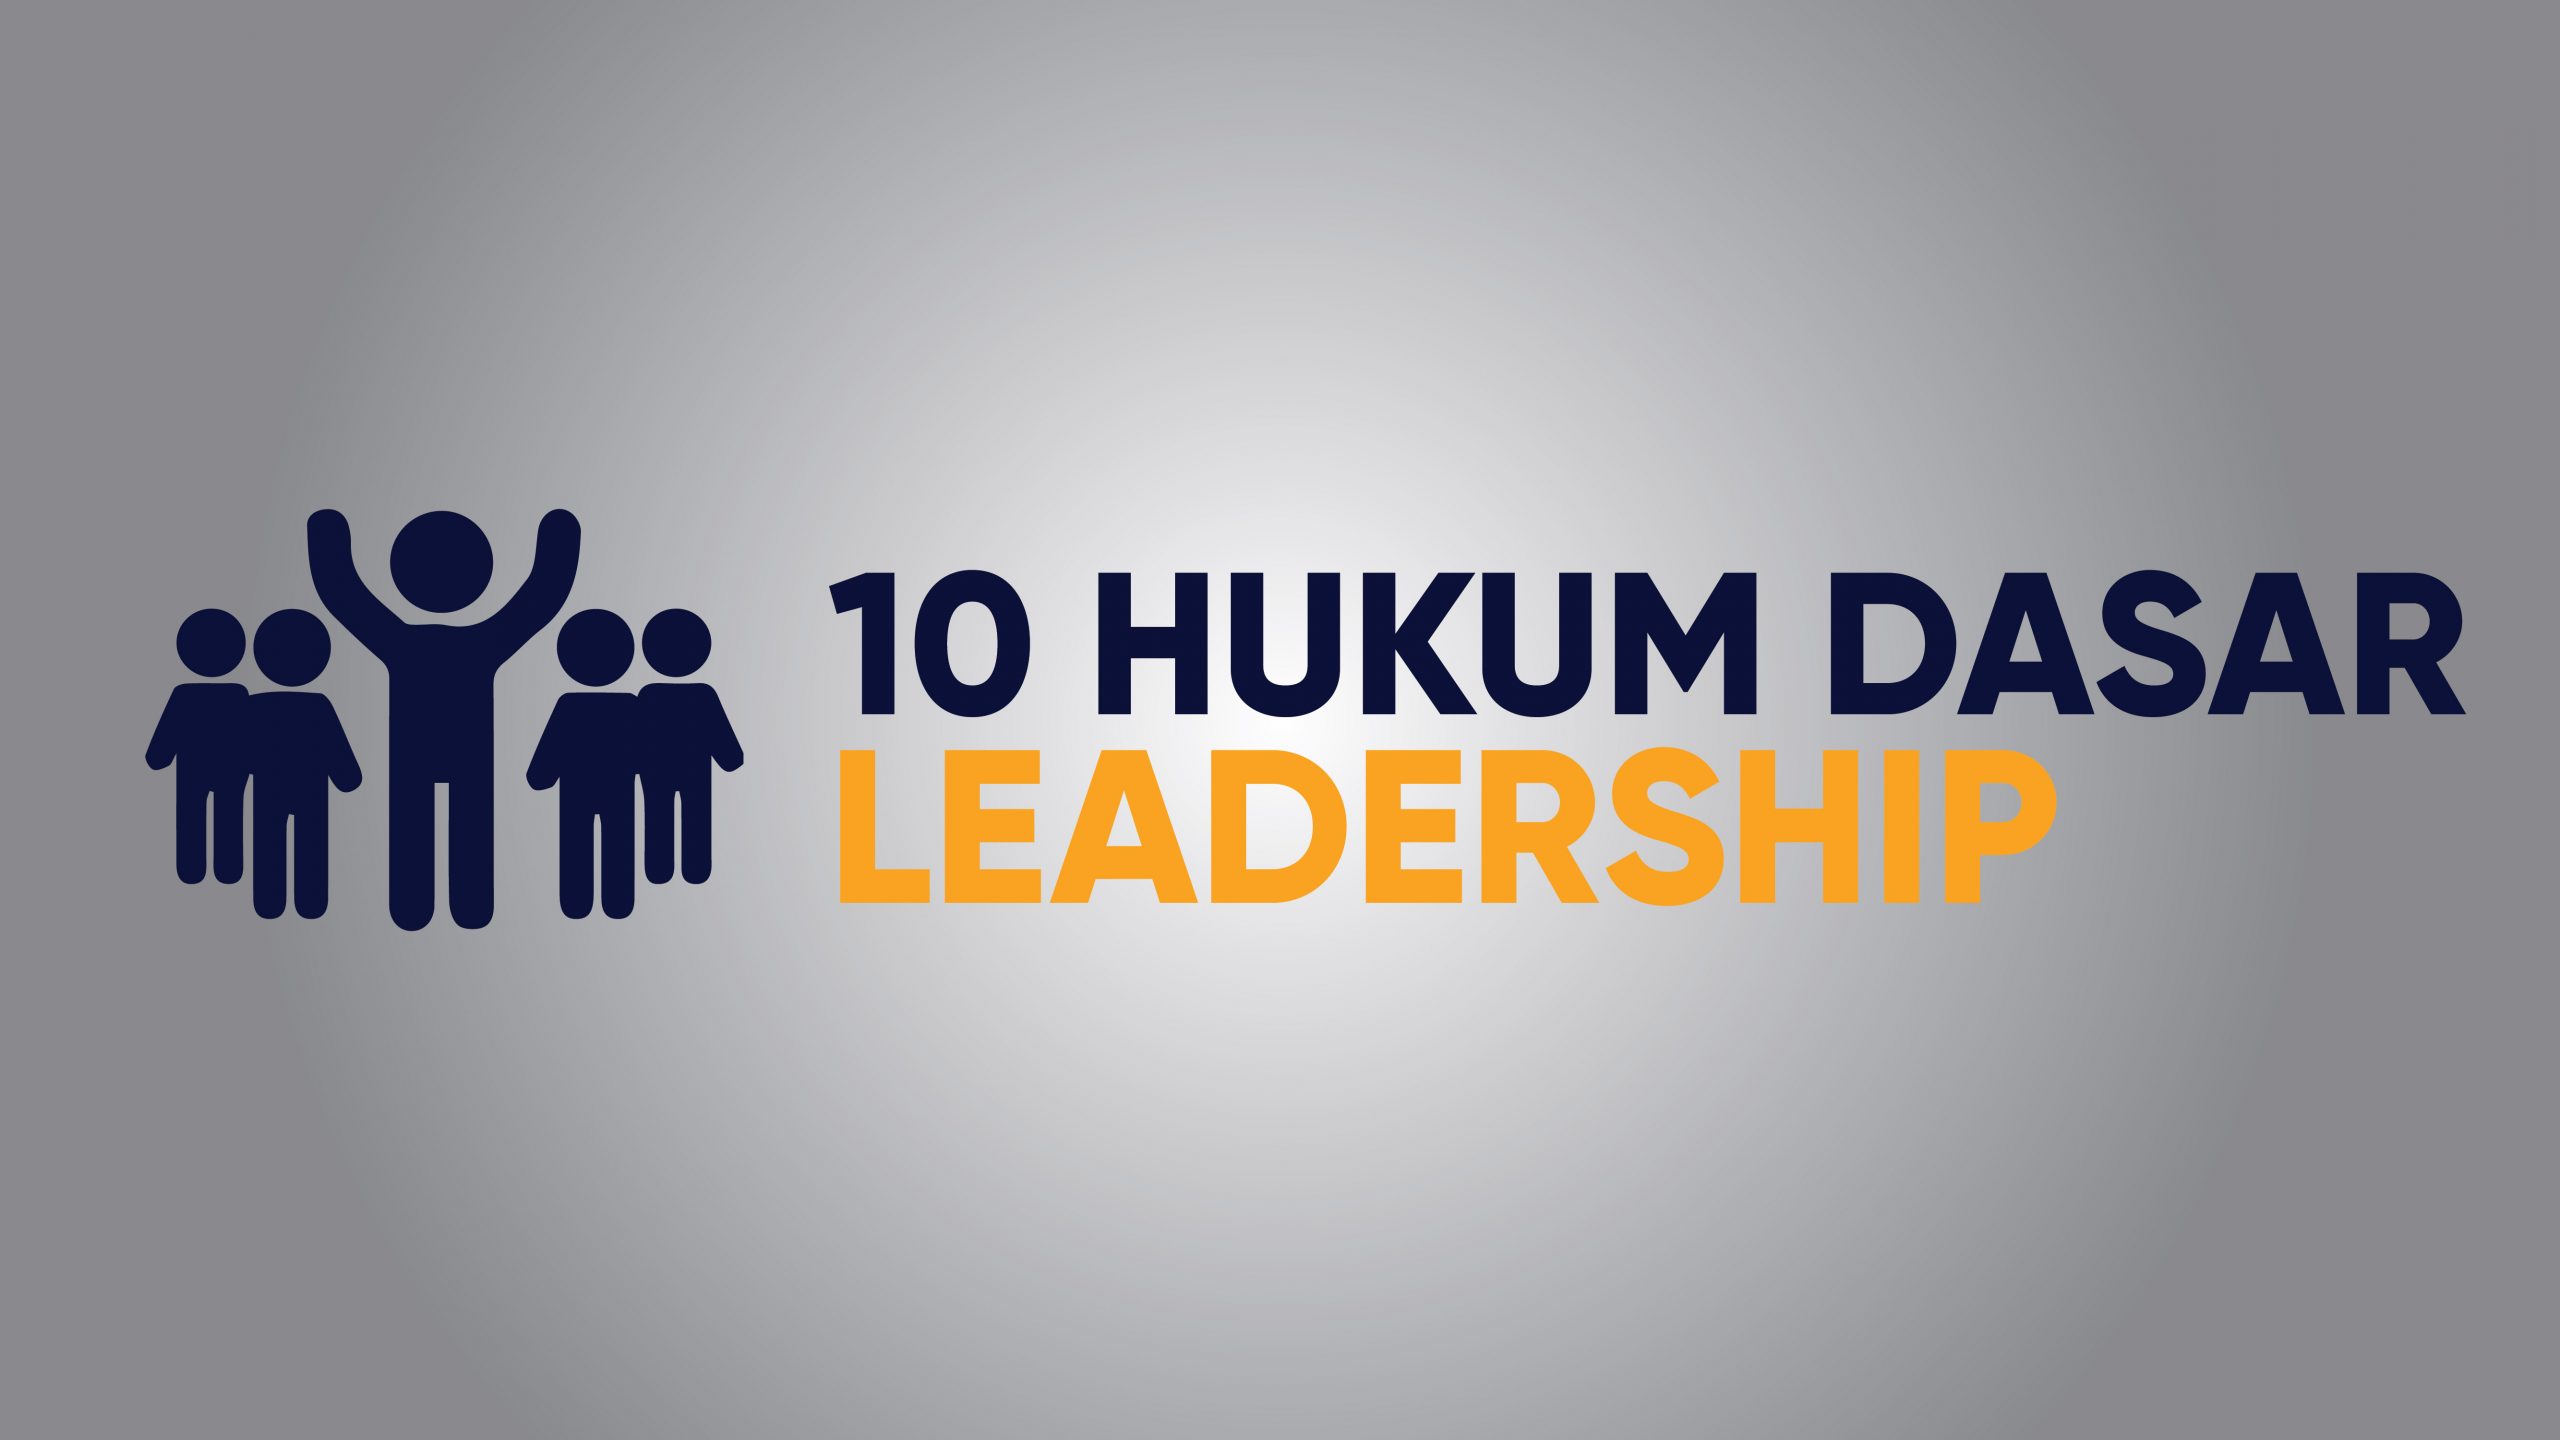 10 HUKUM DASAR LEADERSHIP